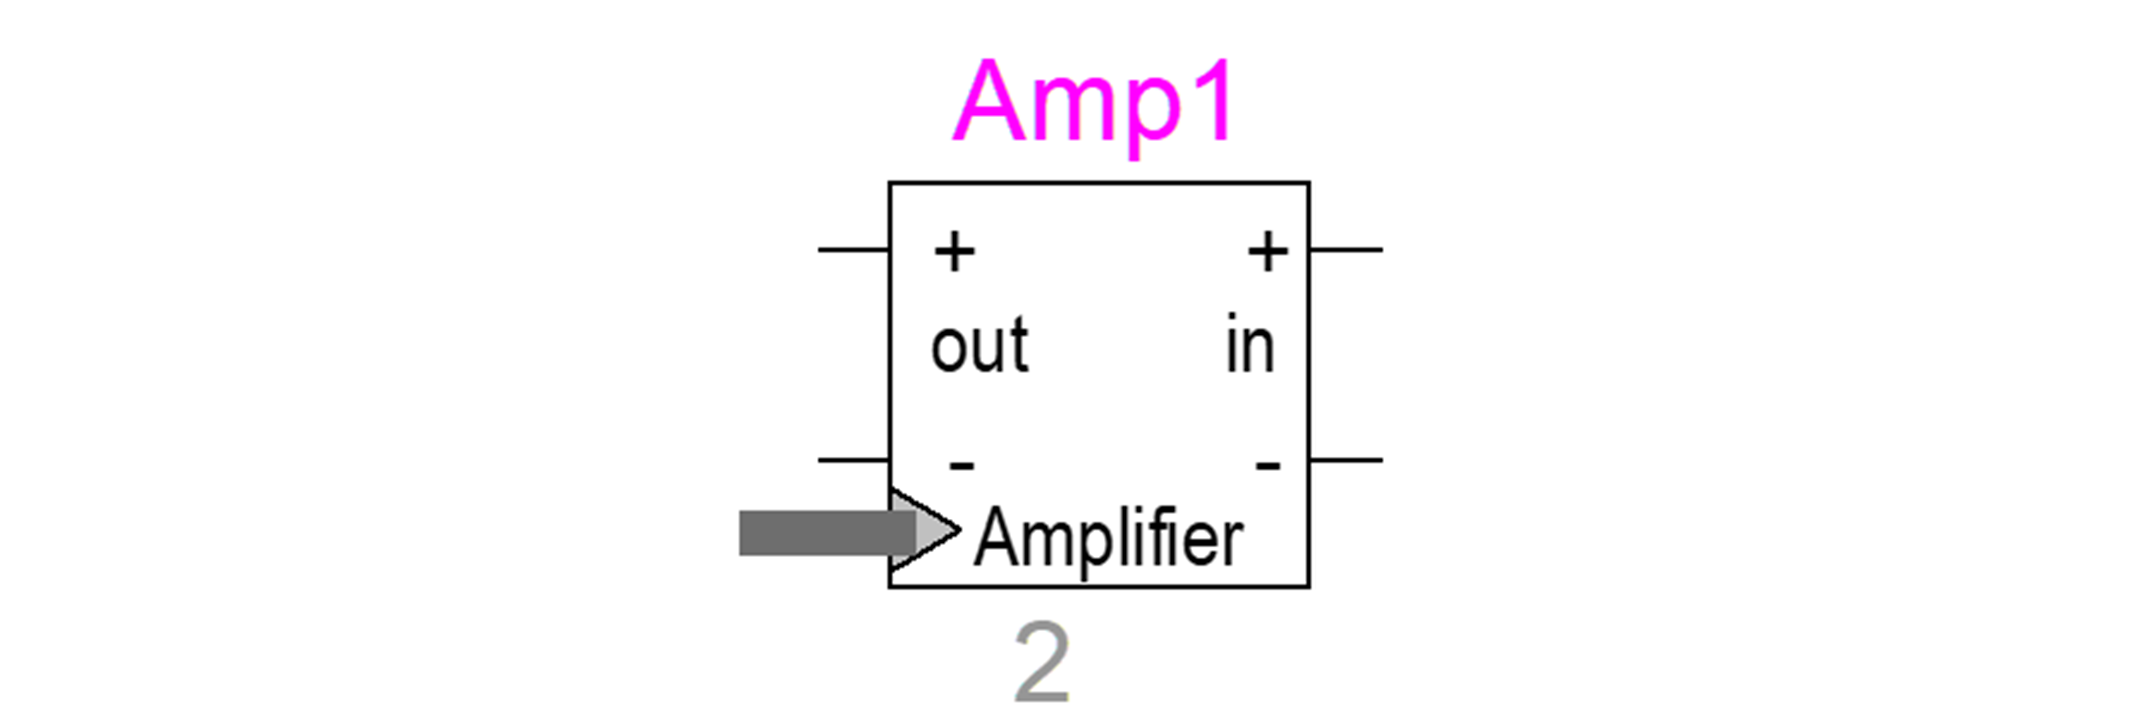 New Amplifier Module